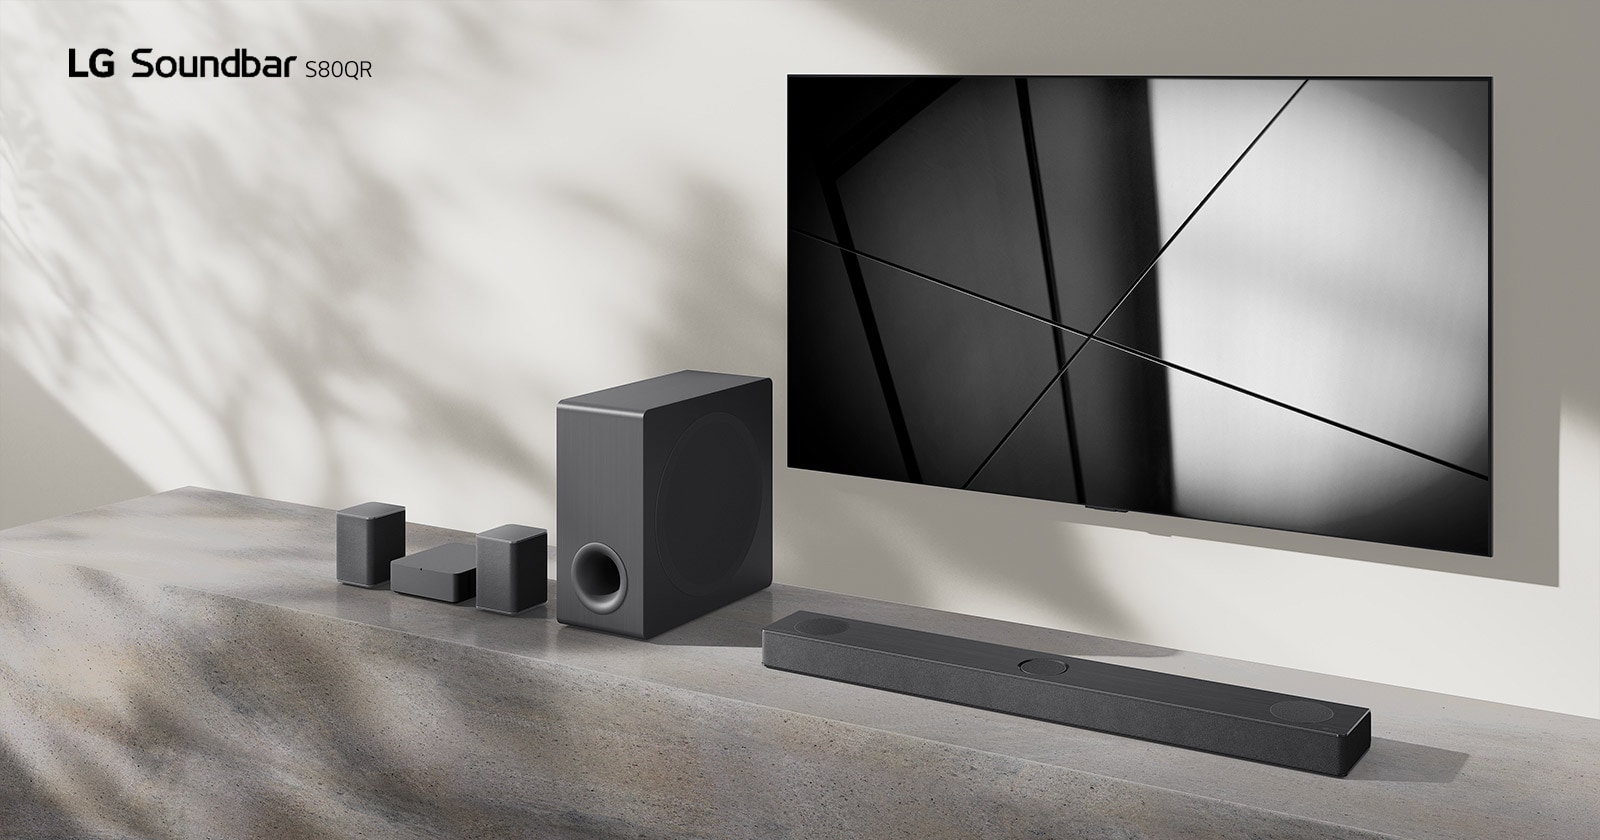 Die LG Soundbar DS80QR und ein LG TV sind zusammen in einem Wohnzimmer aufgestellt. Der Fernseher ist eingeschaltet und zeigt ein Schwarzweißbild an.